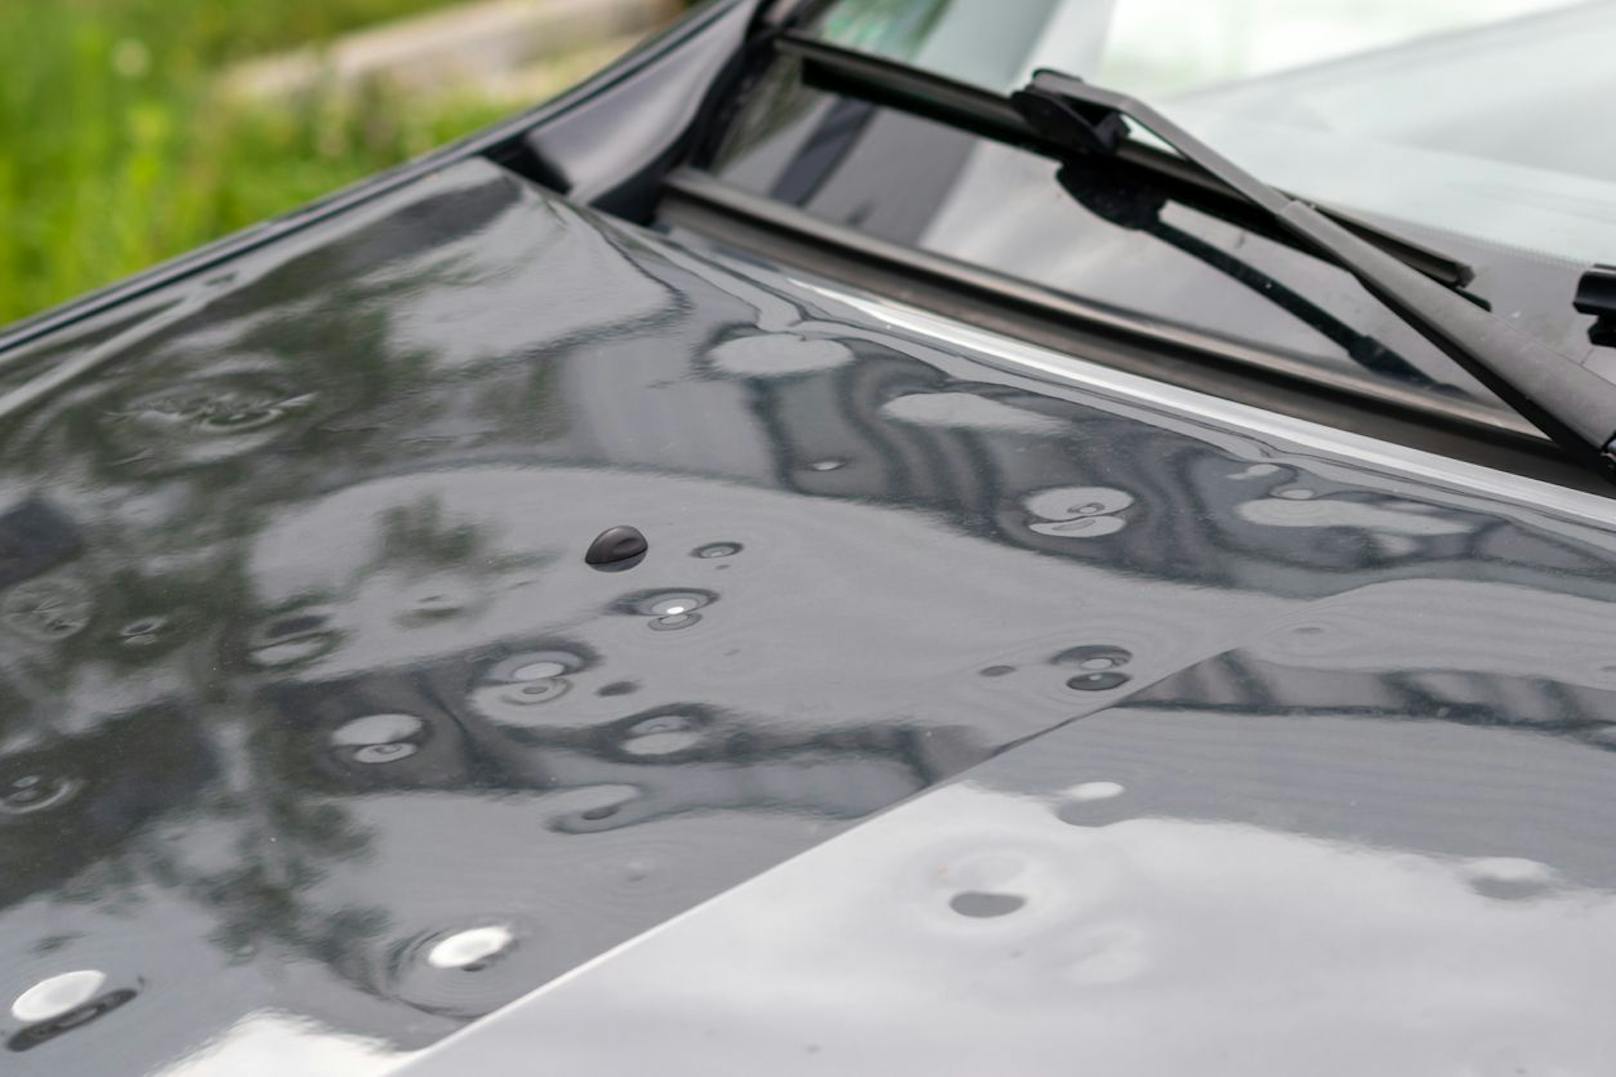 Verursacht Unwetter Hagelschäden am Auto, stellt sich die Frage, wann welche Versicherung zahlt. (Symbolbild)